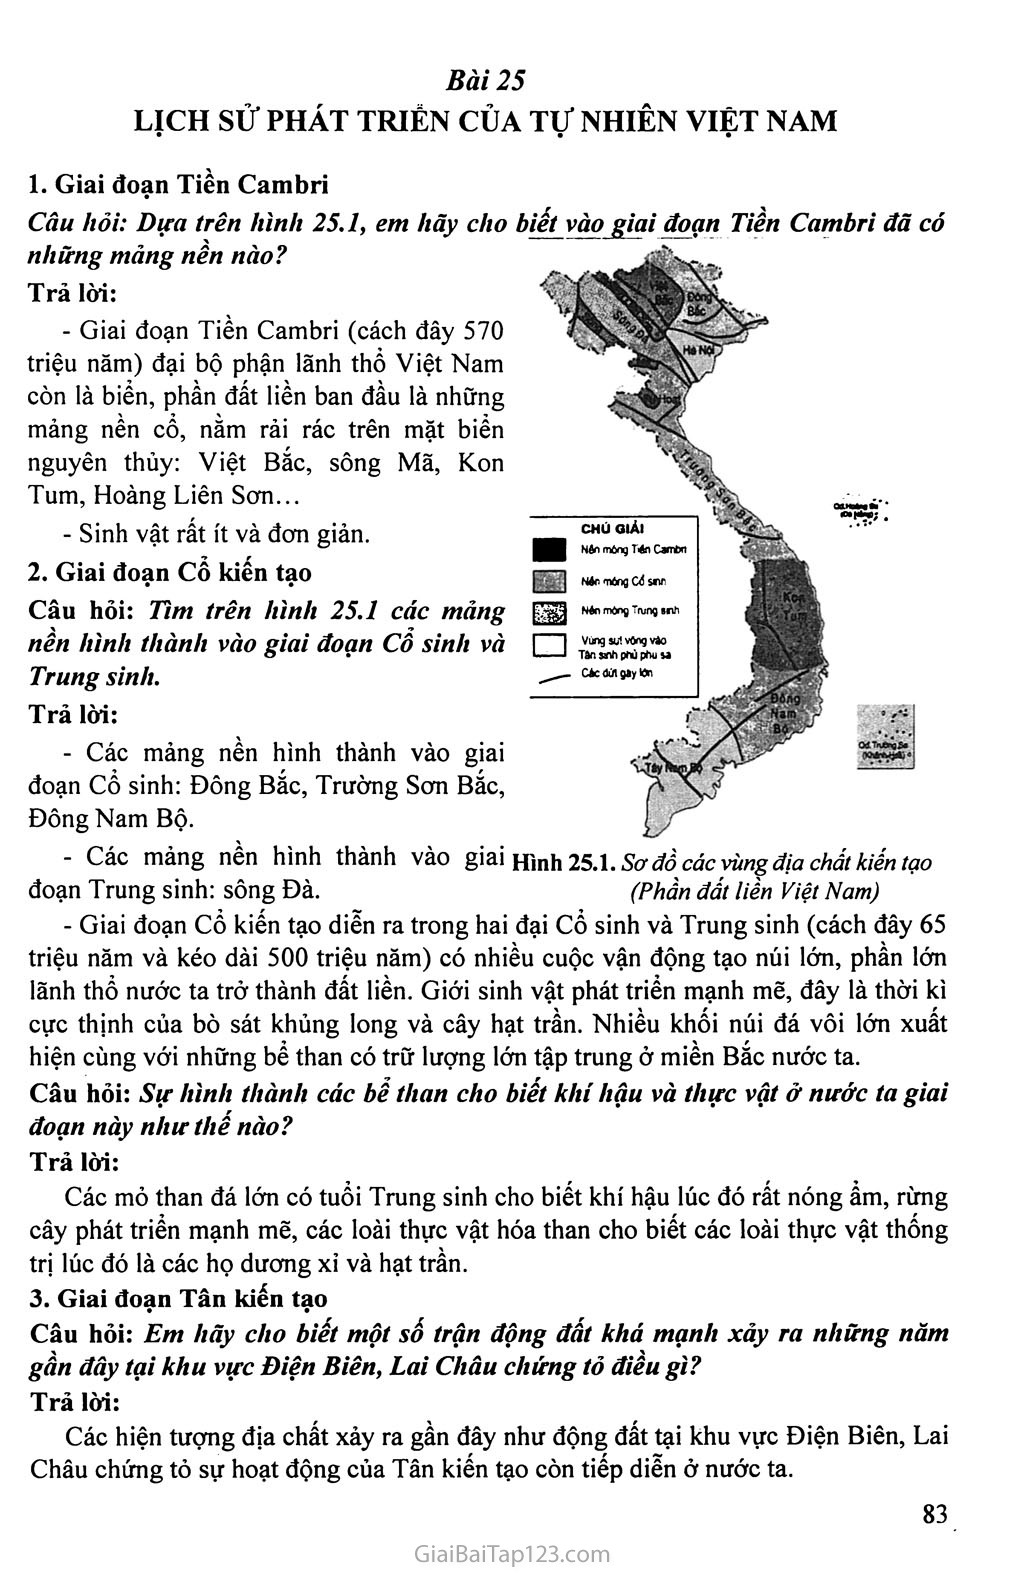 Bài 25. Lịch sử phát triển của tự nhiên Việt Nam trang 1